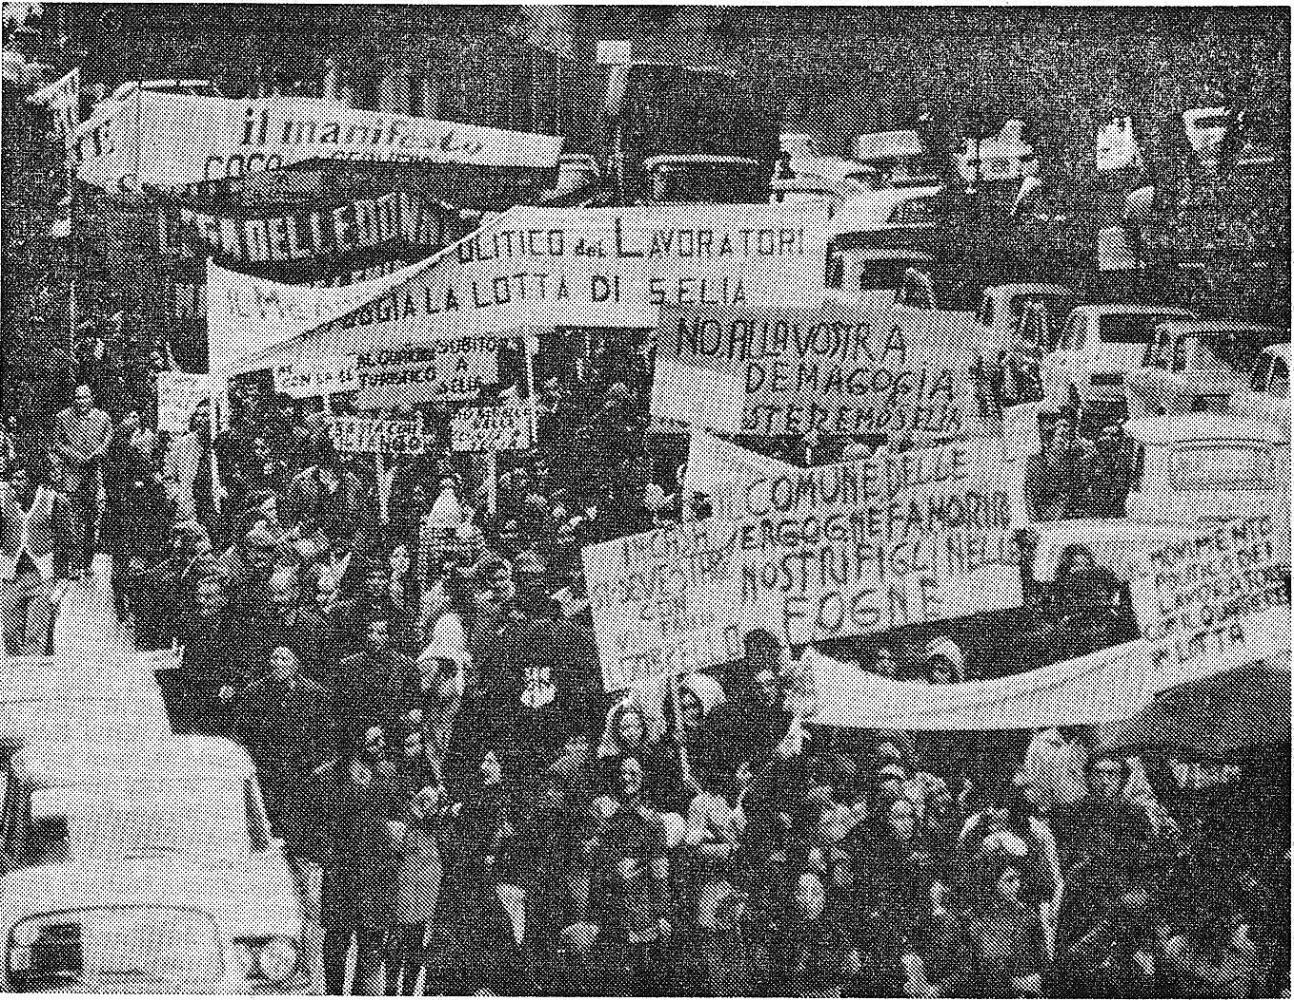 Unione Sarda 26 02 1972 Imponente marcia sul municipio di migliaia di abitanti di SantElia